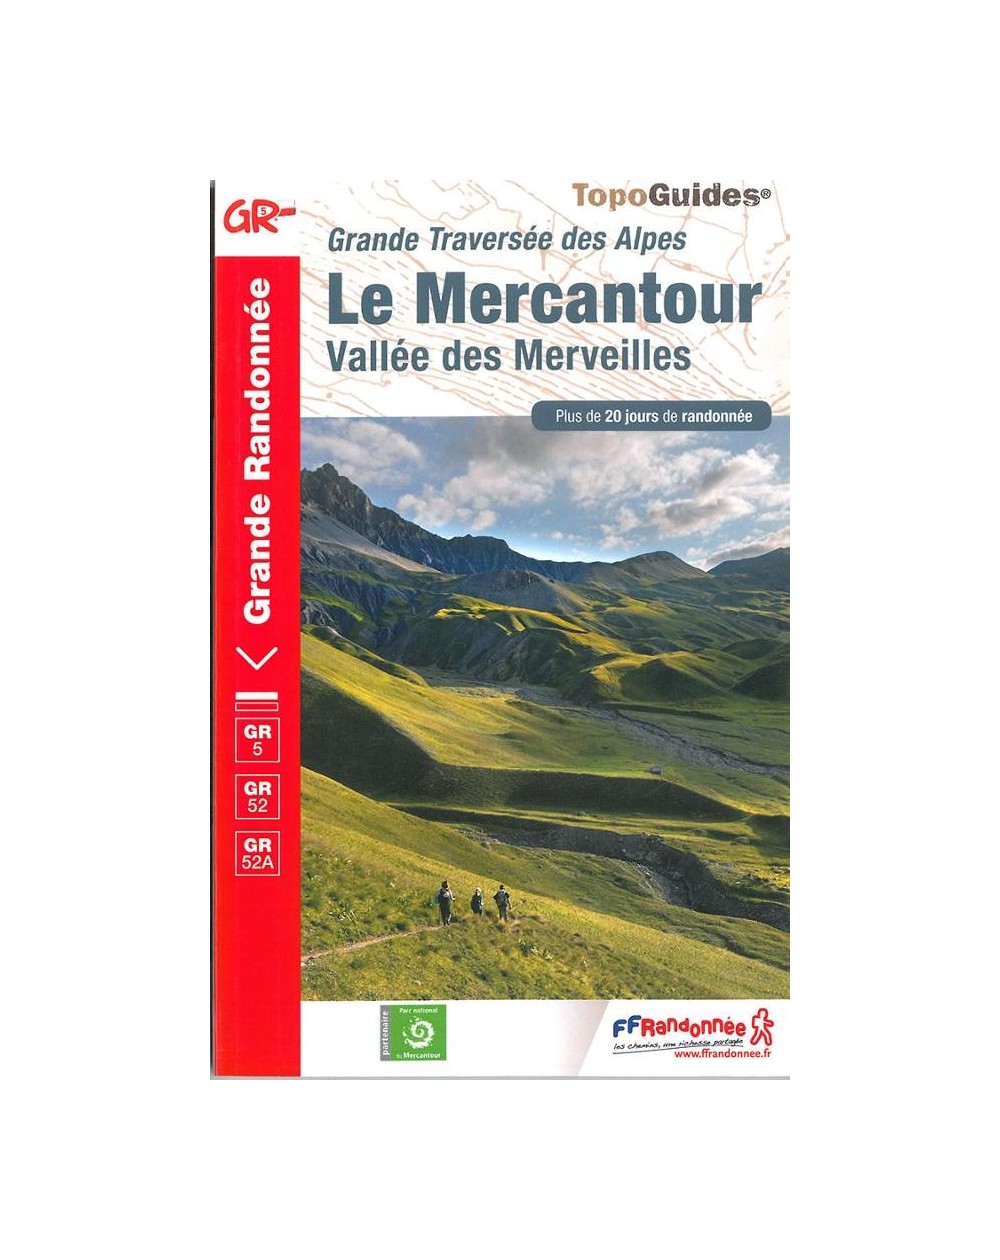 GR5-Le Mercantour - Vallée des Merveilles | Topoguide FFRP